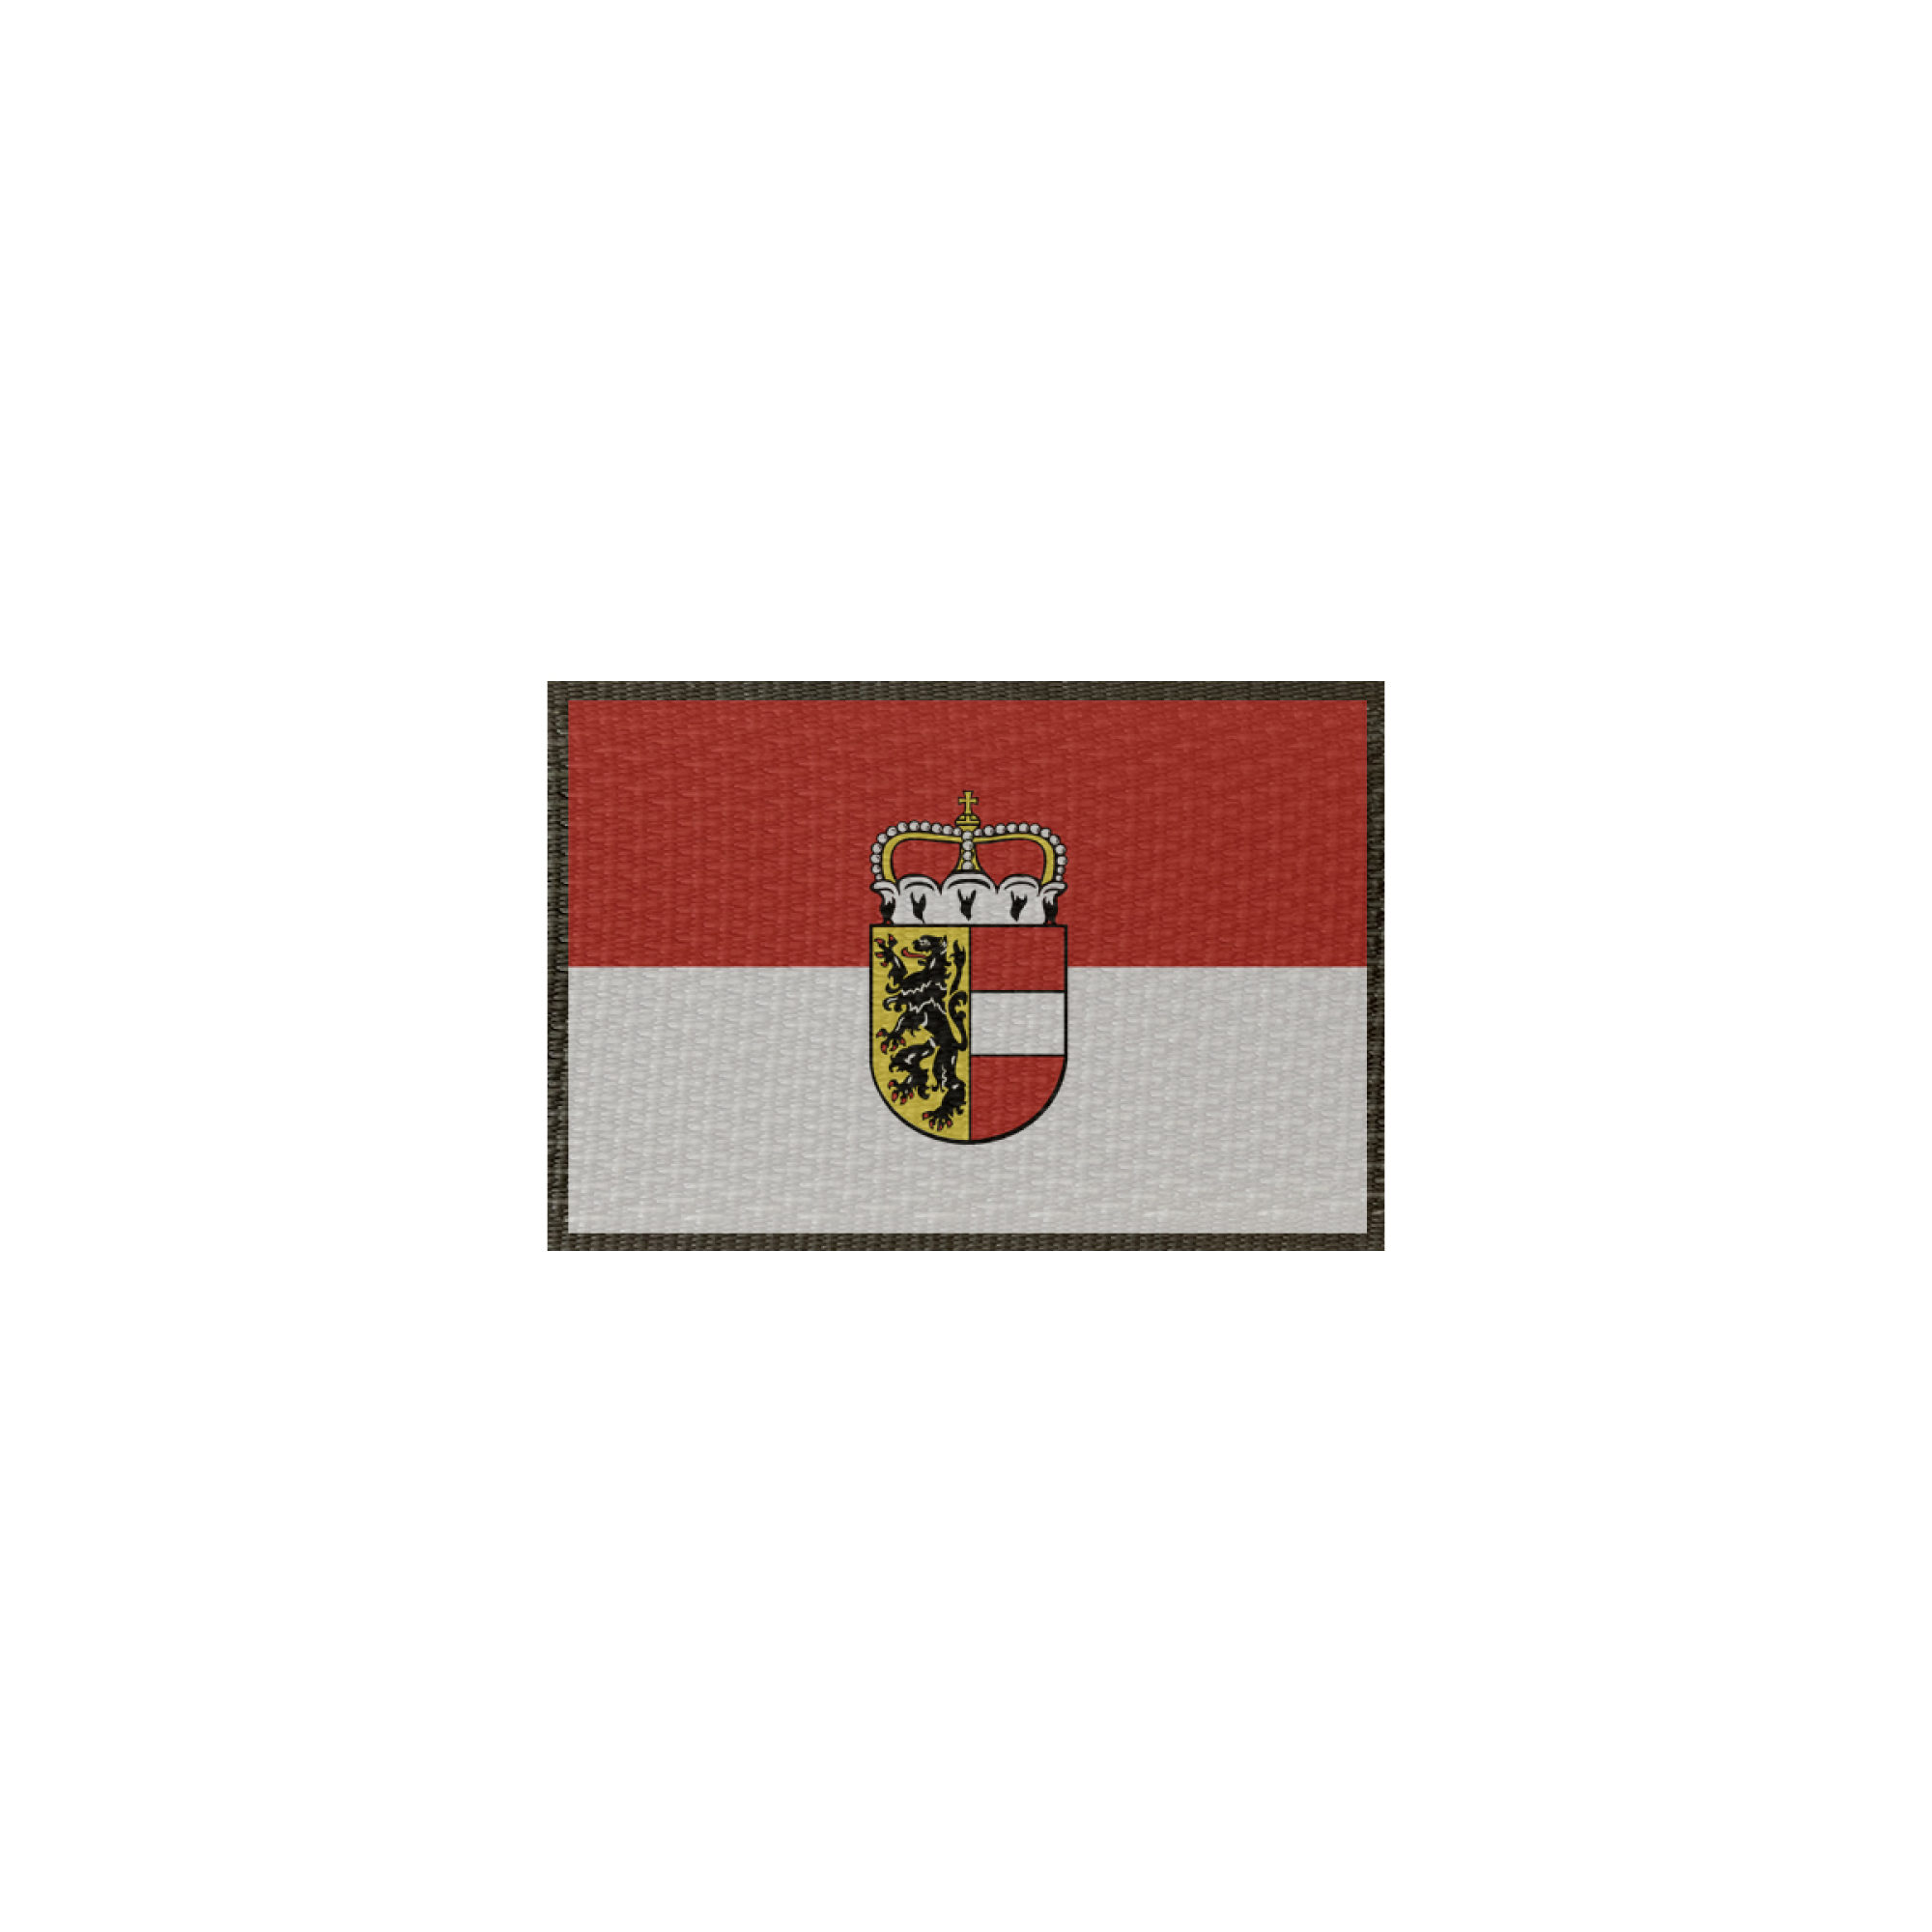 Patch Flagge Salzburg Klett, selbstklebend, verschiedene Größen